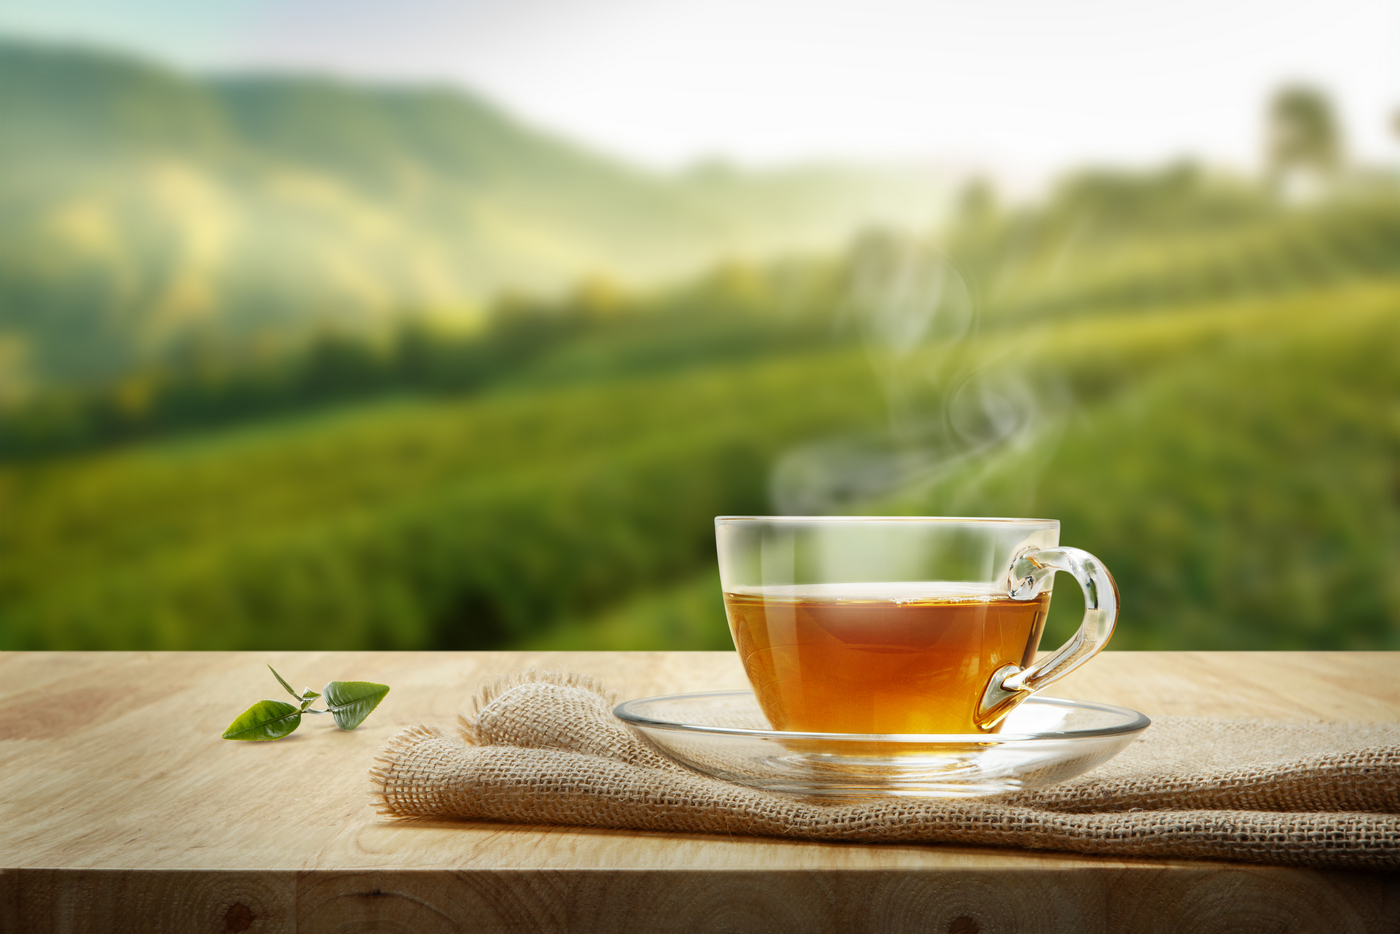 Ceai verde pentru slăbit - Importanta ceaiului verde in curele de slabire